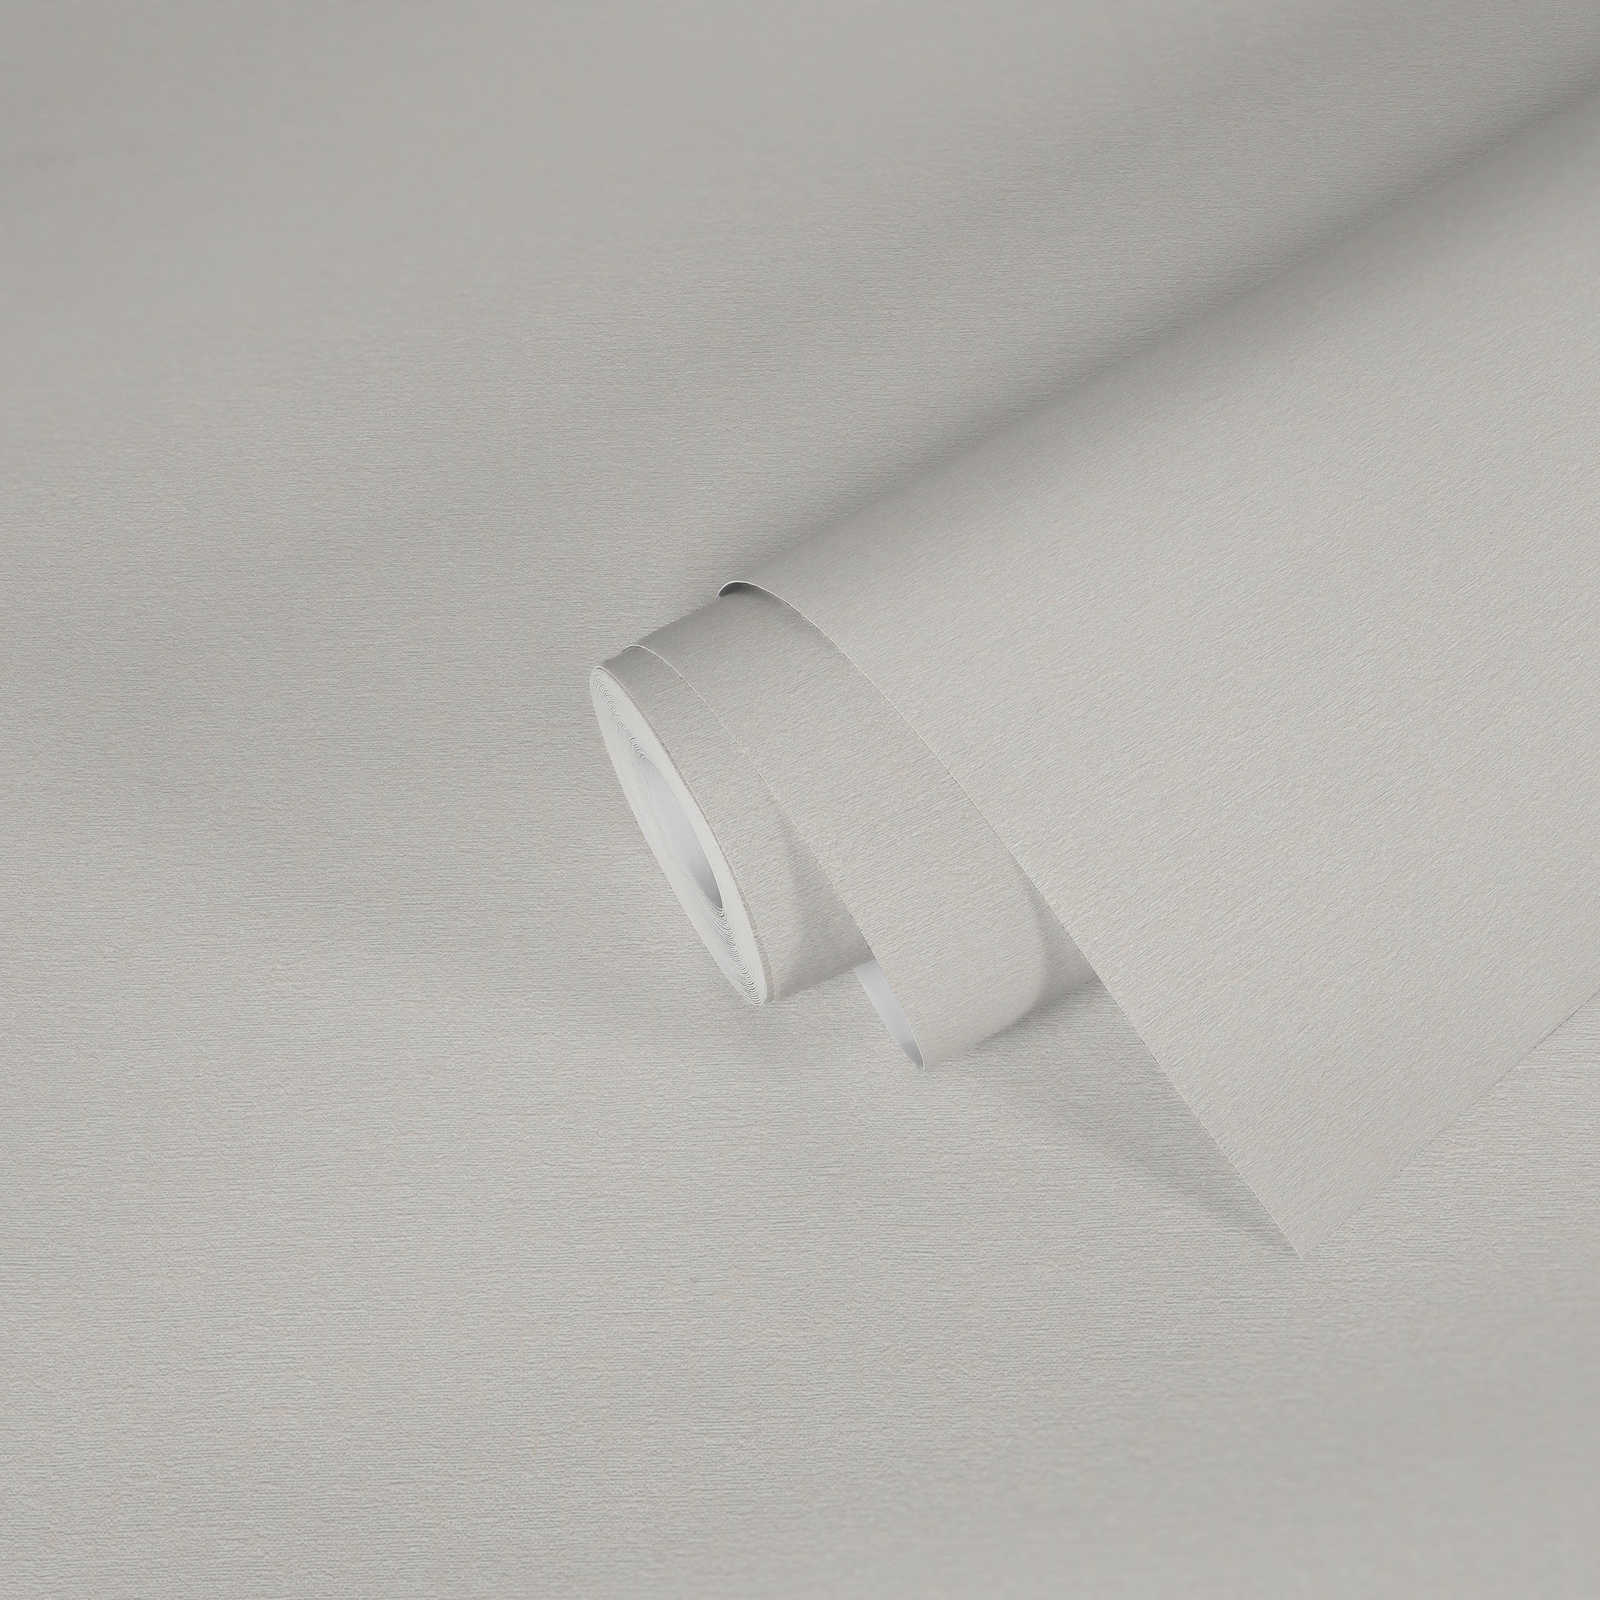             papier peint en papier uni légèrement structuré aspect mat - blanc, crème
        